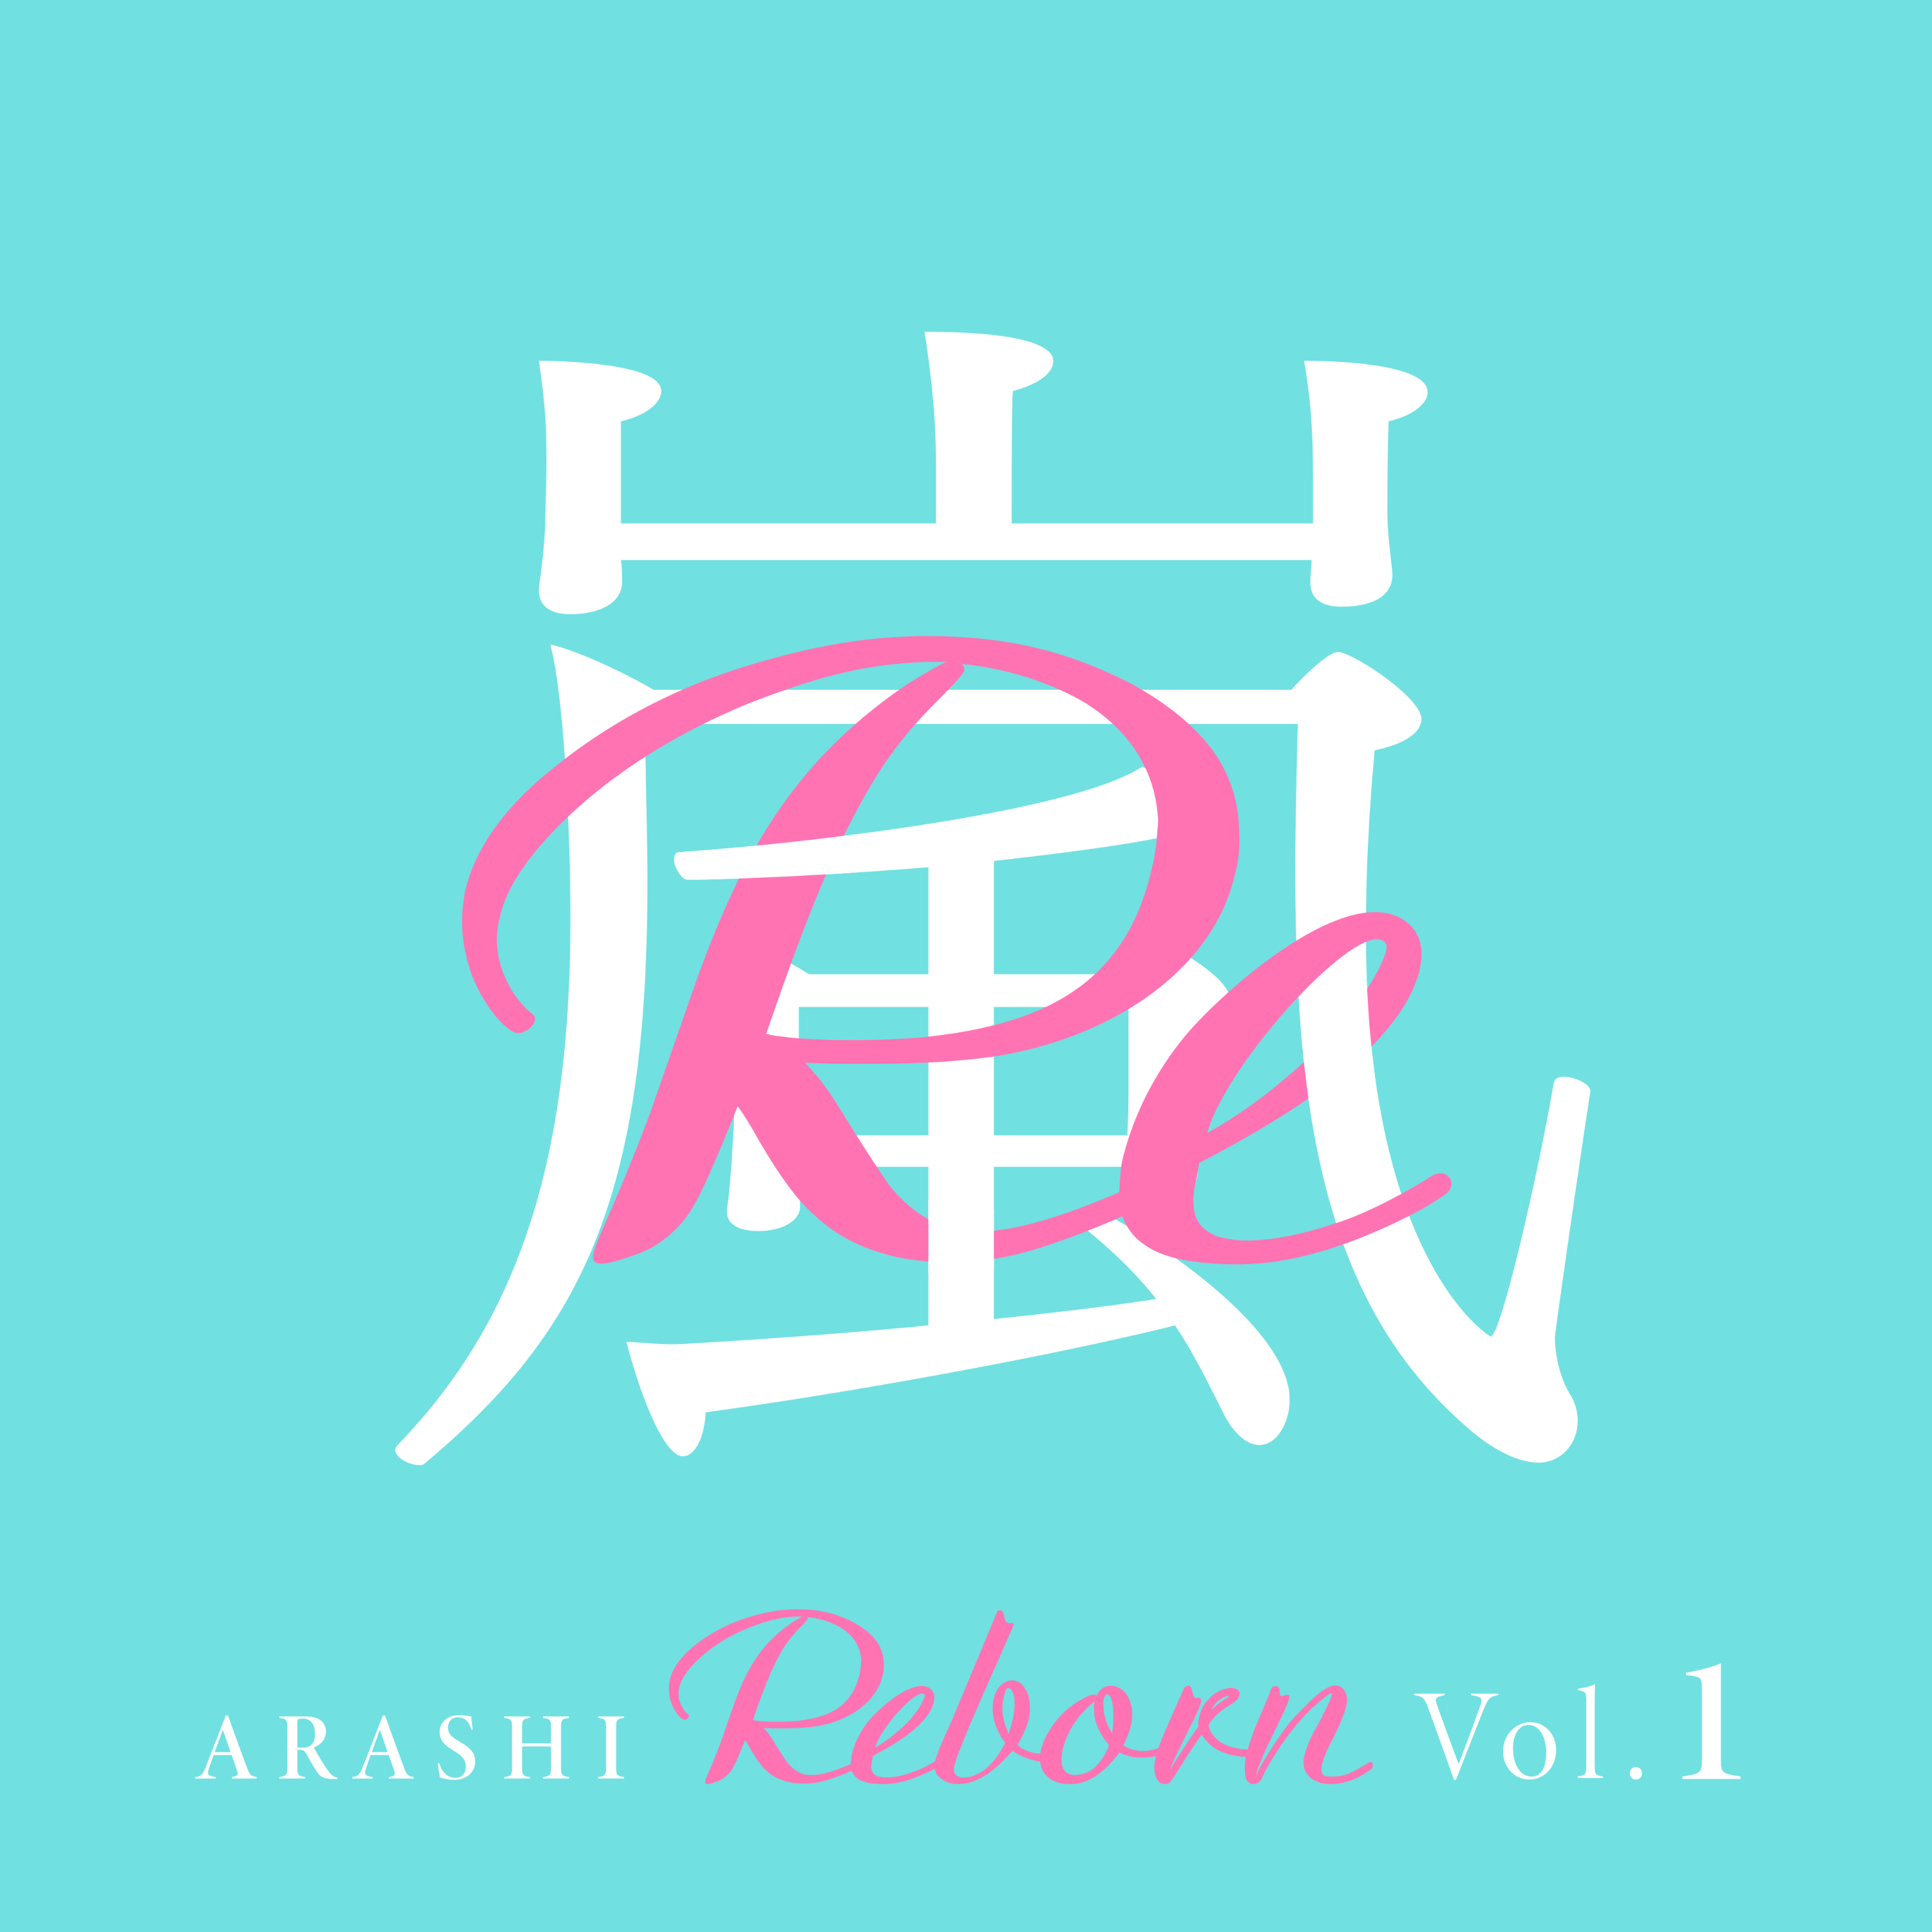 嵐 (あらし) 1stデジタルEP『Reborn Vol.1』(2020年2月28日発売) 高画質ジャケット画像 (ジャケ写)